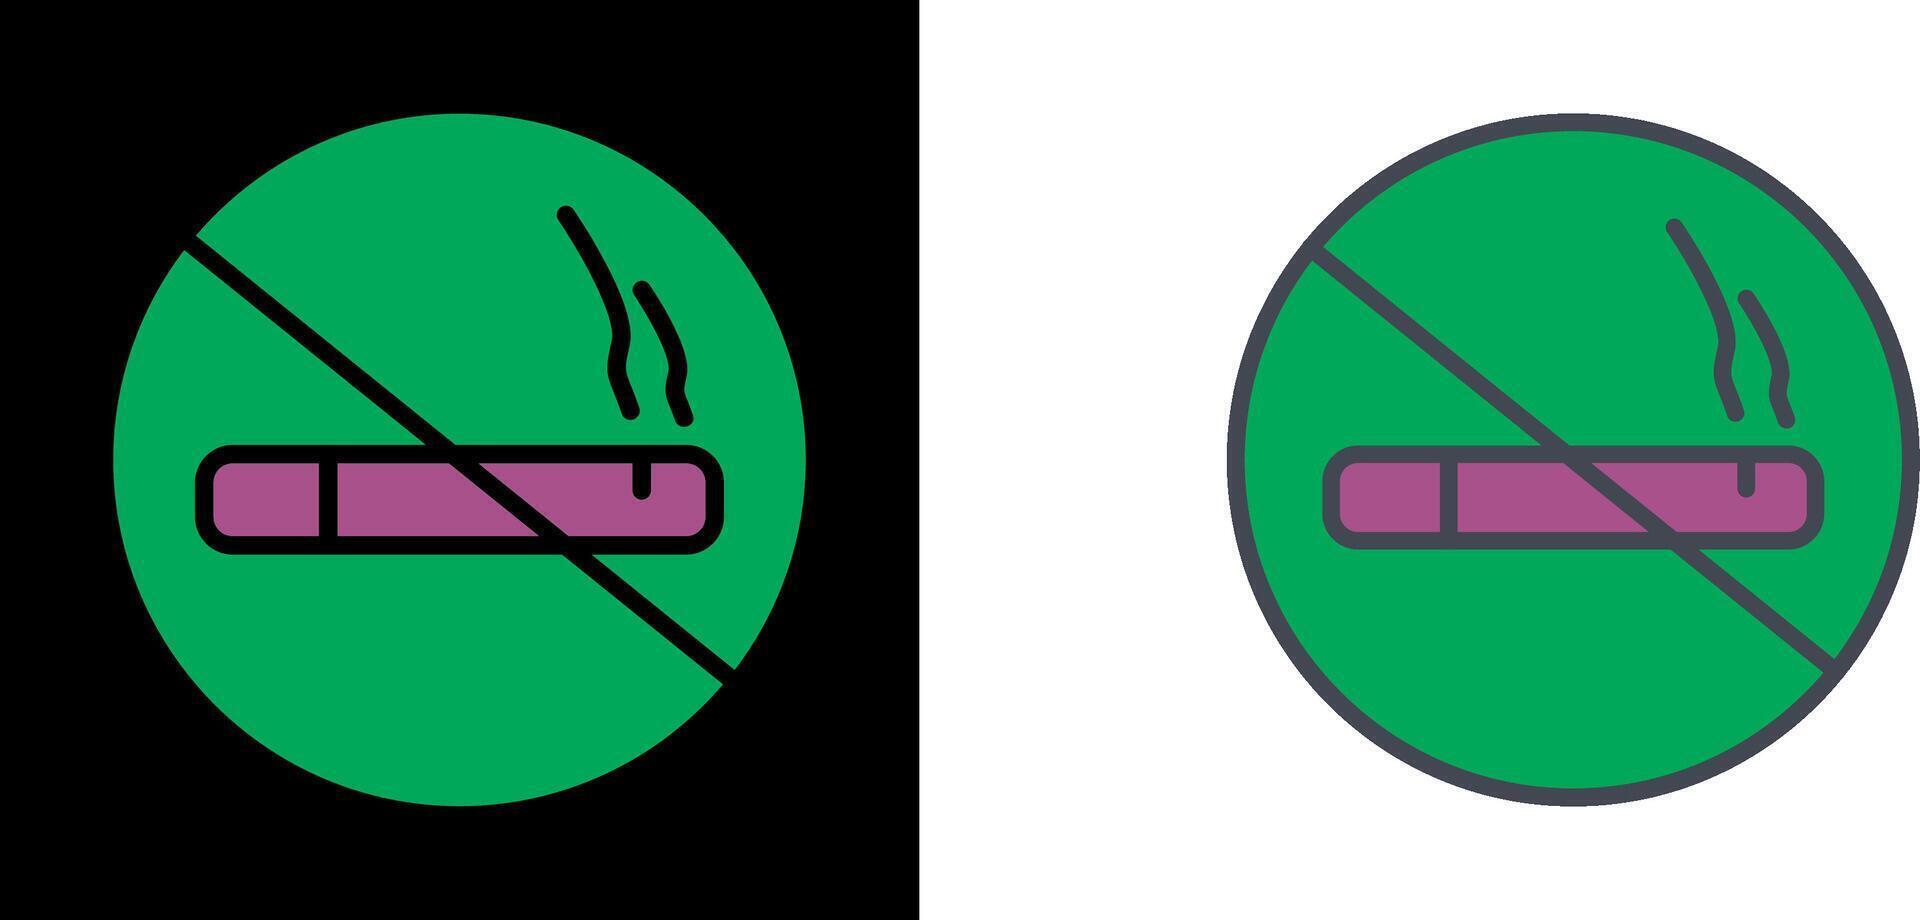 Nichtrauchersymbol vektor